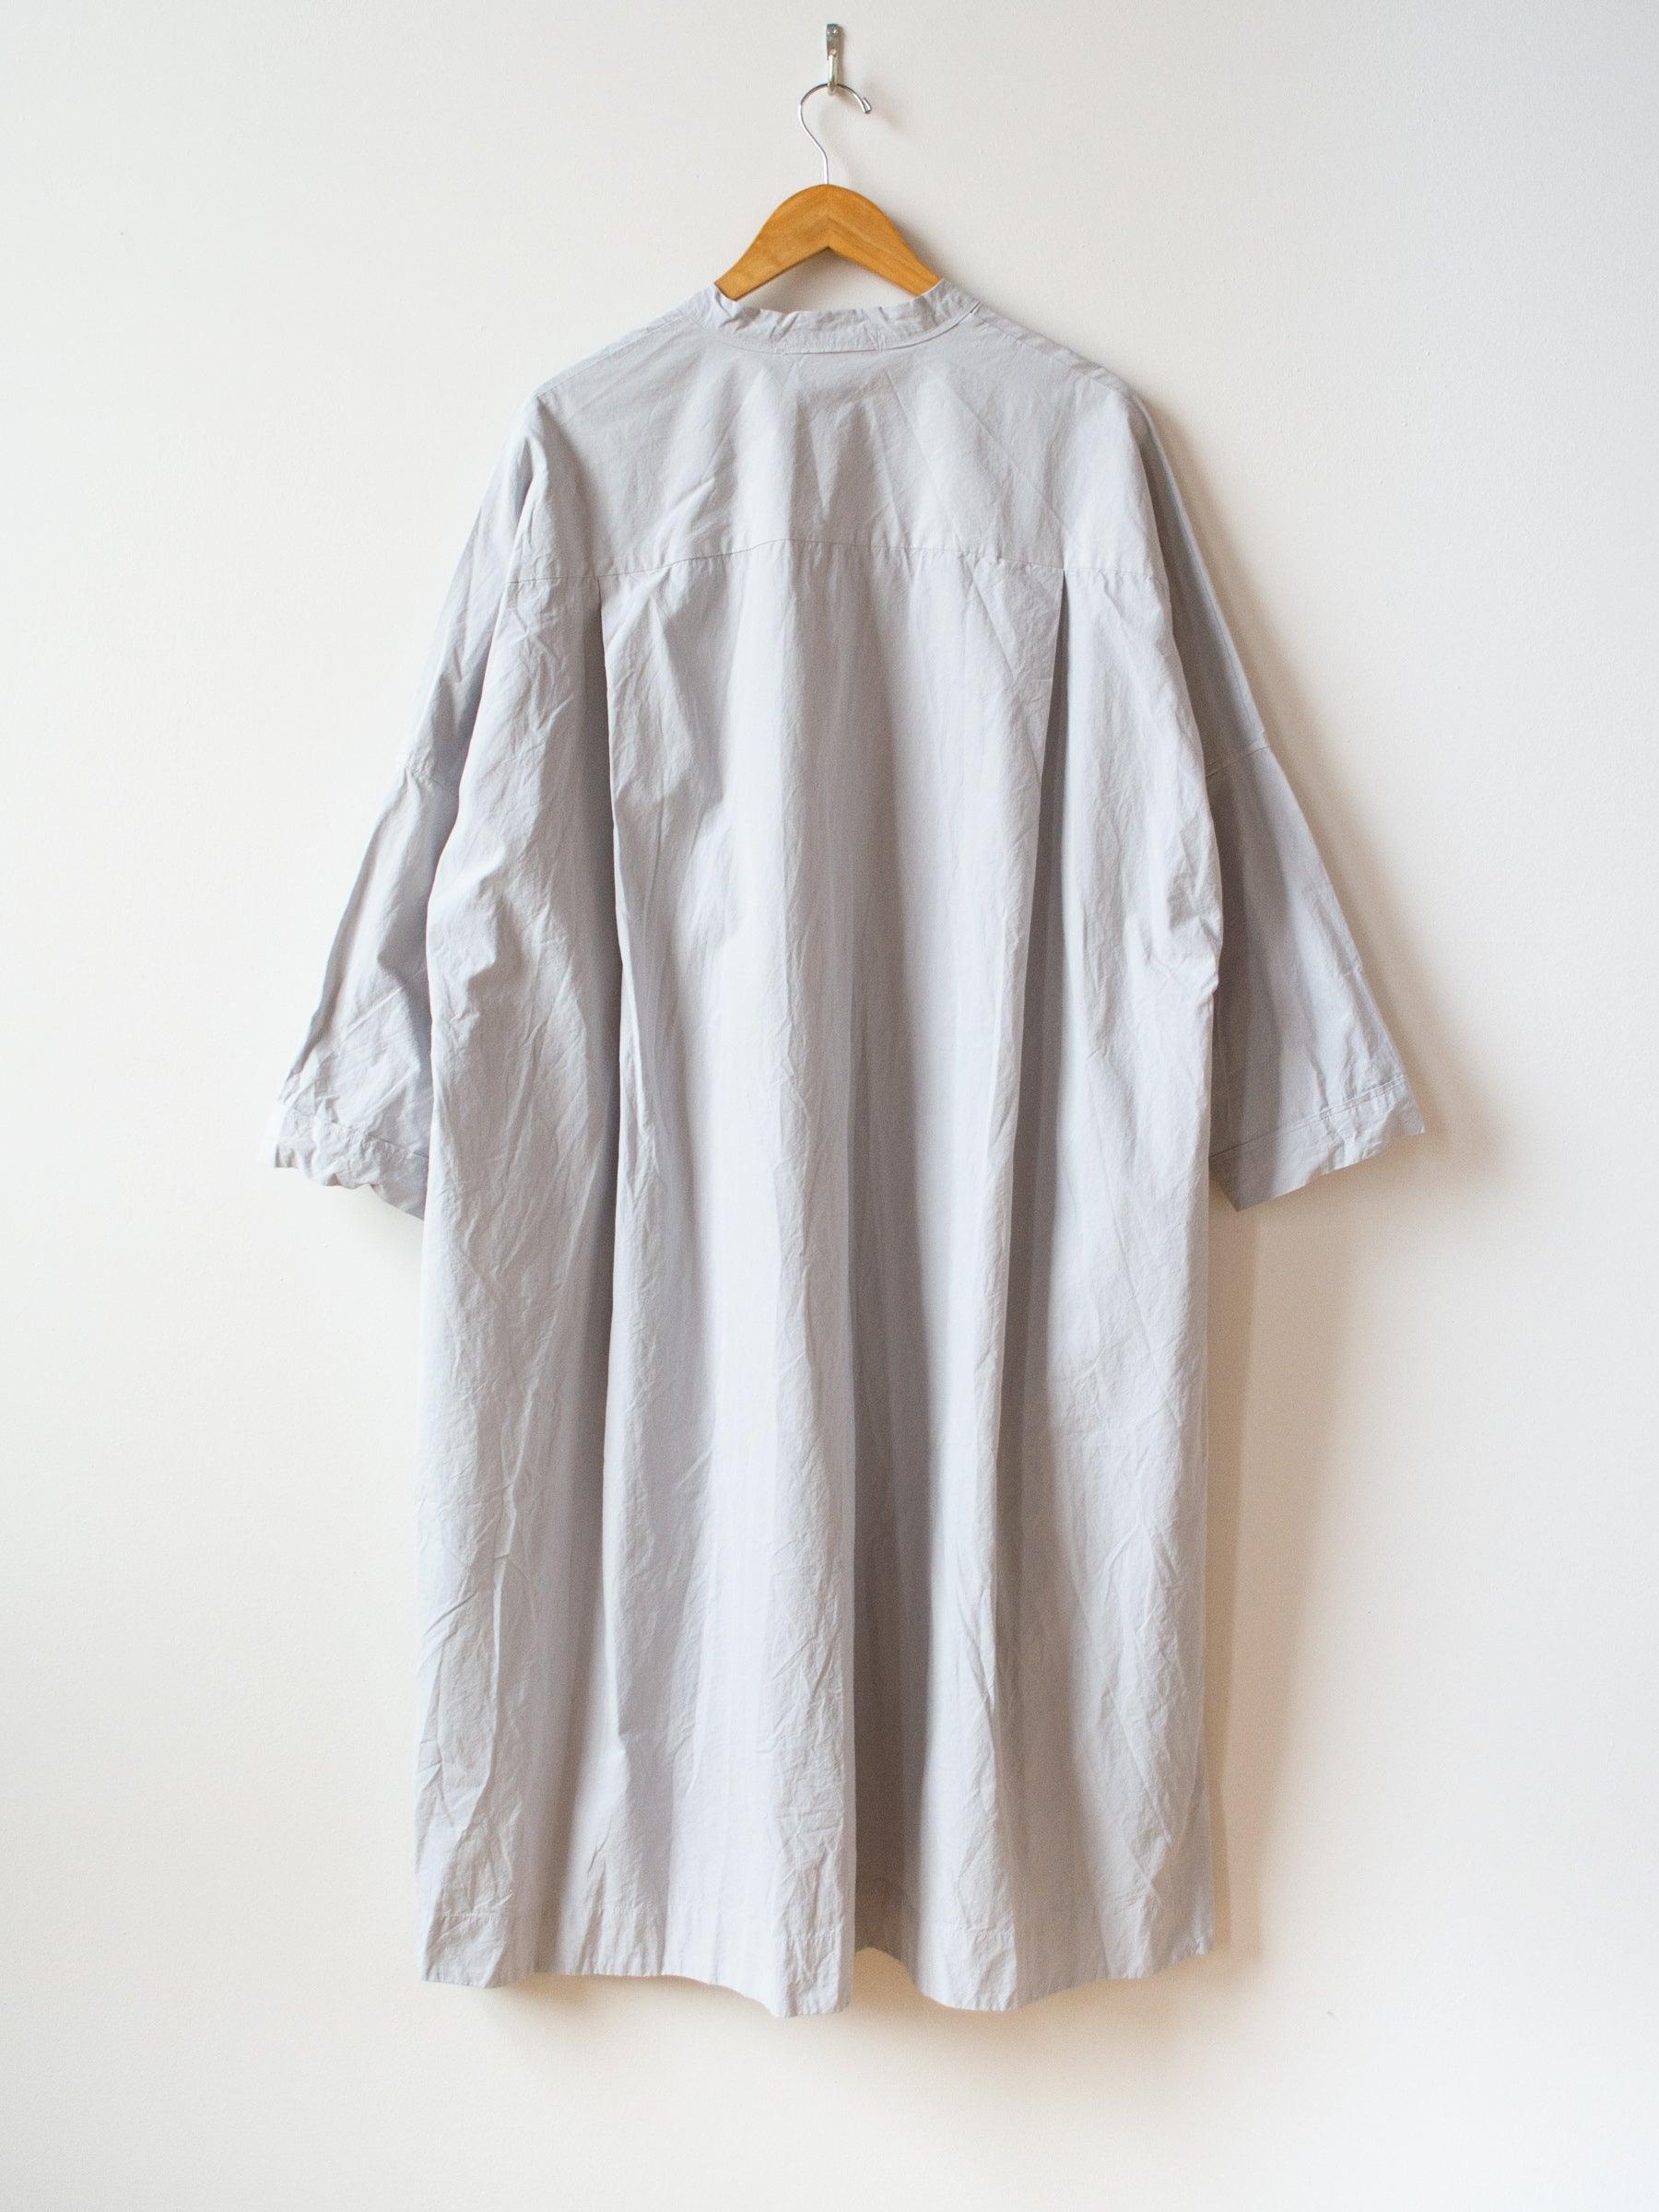 Namu Shop - Veritecoeur Typewriter Cotton Shirt Dress - Ash